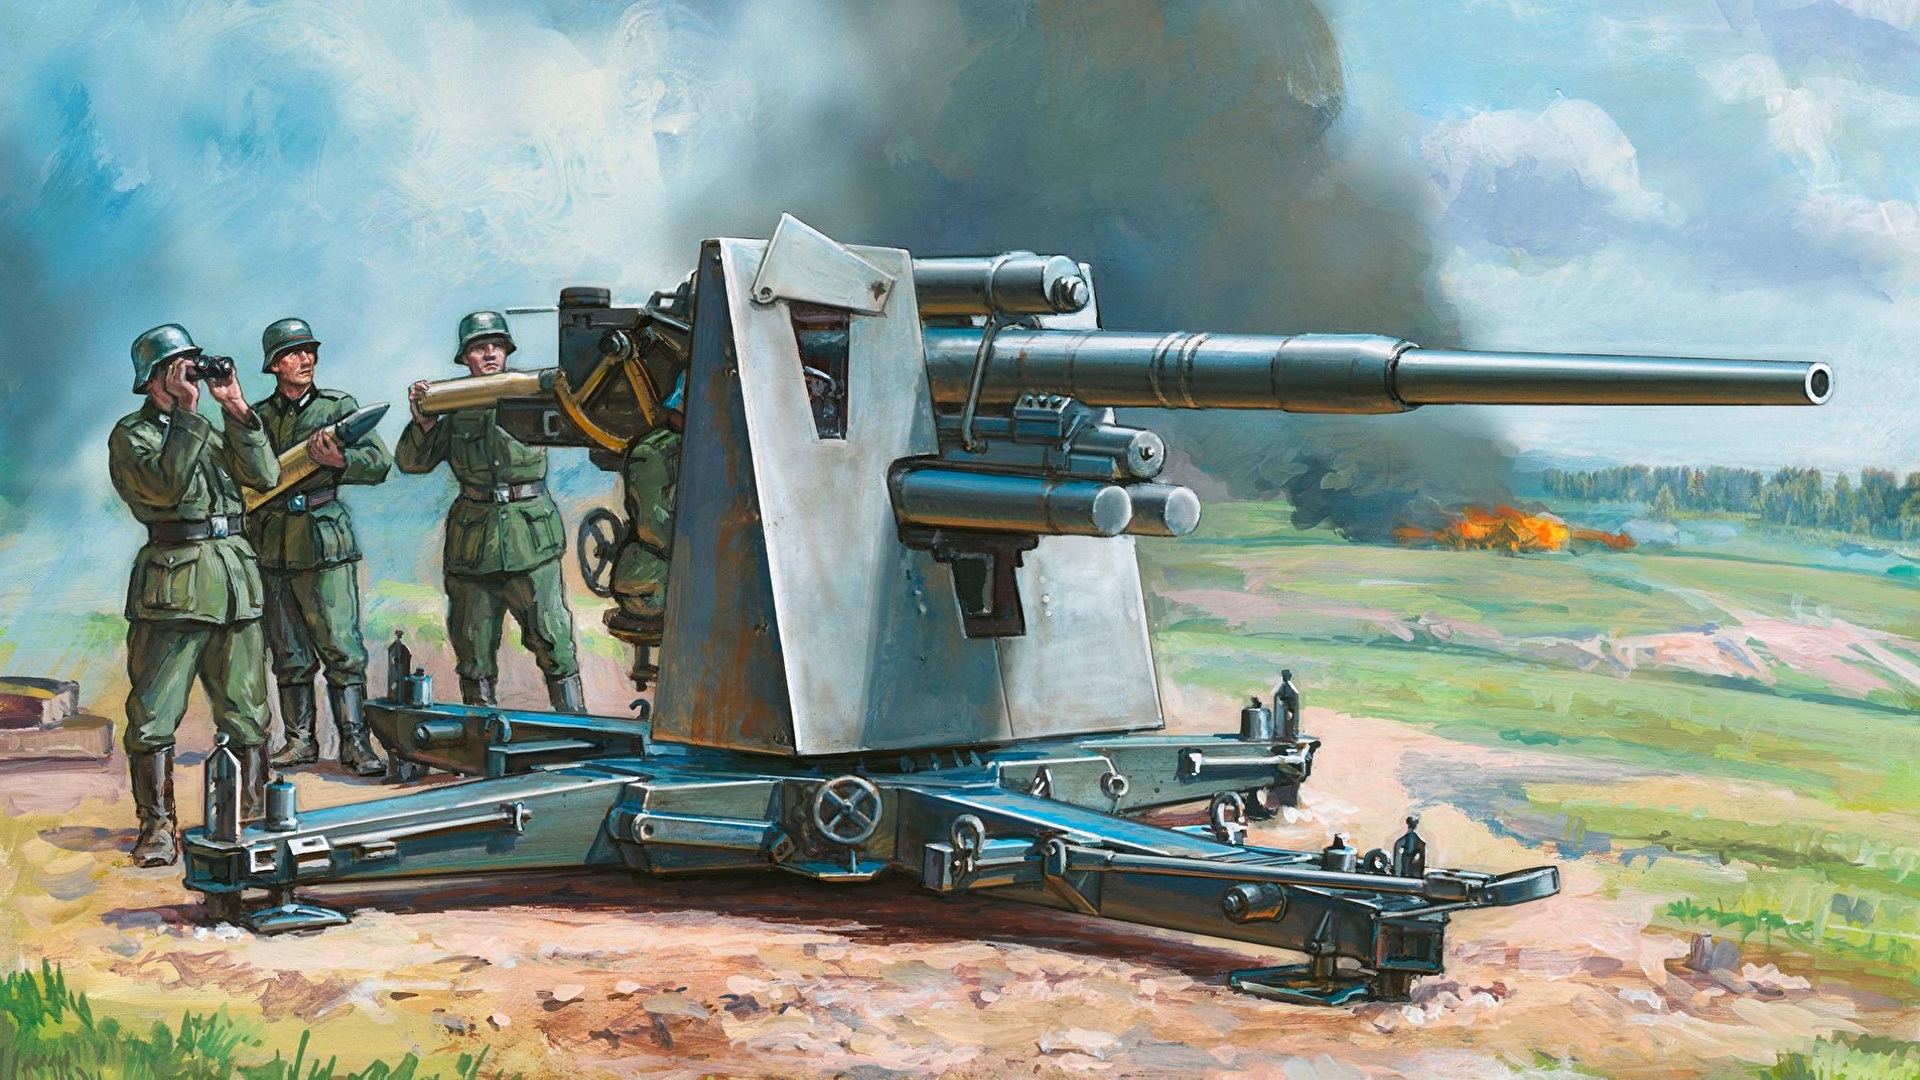 壁紙 19x1080 描かれた壁紙 カノン砲 兵 German mm Flak 36 37 ドイツ語 陸軍 ダウンロード 写真